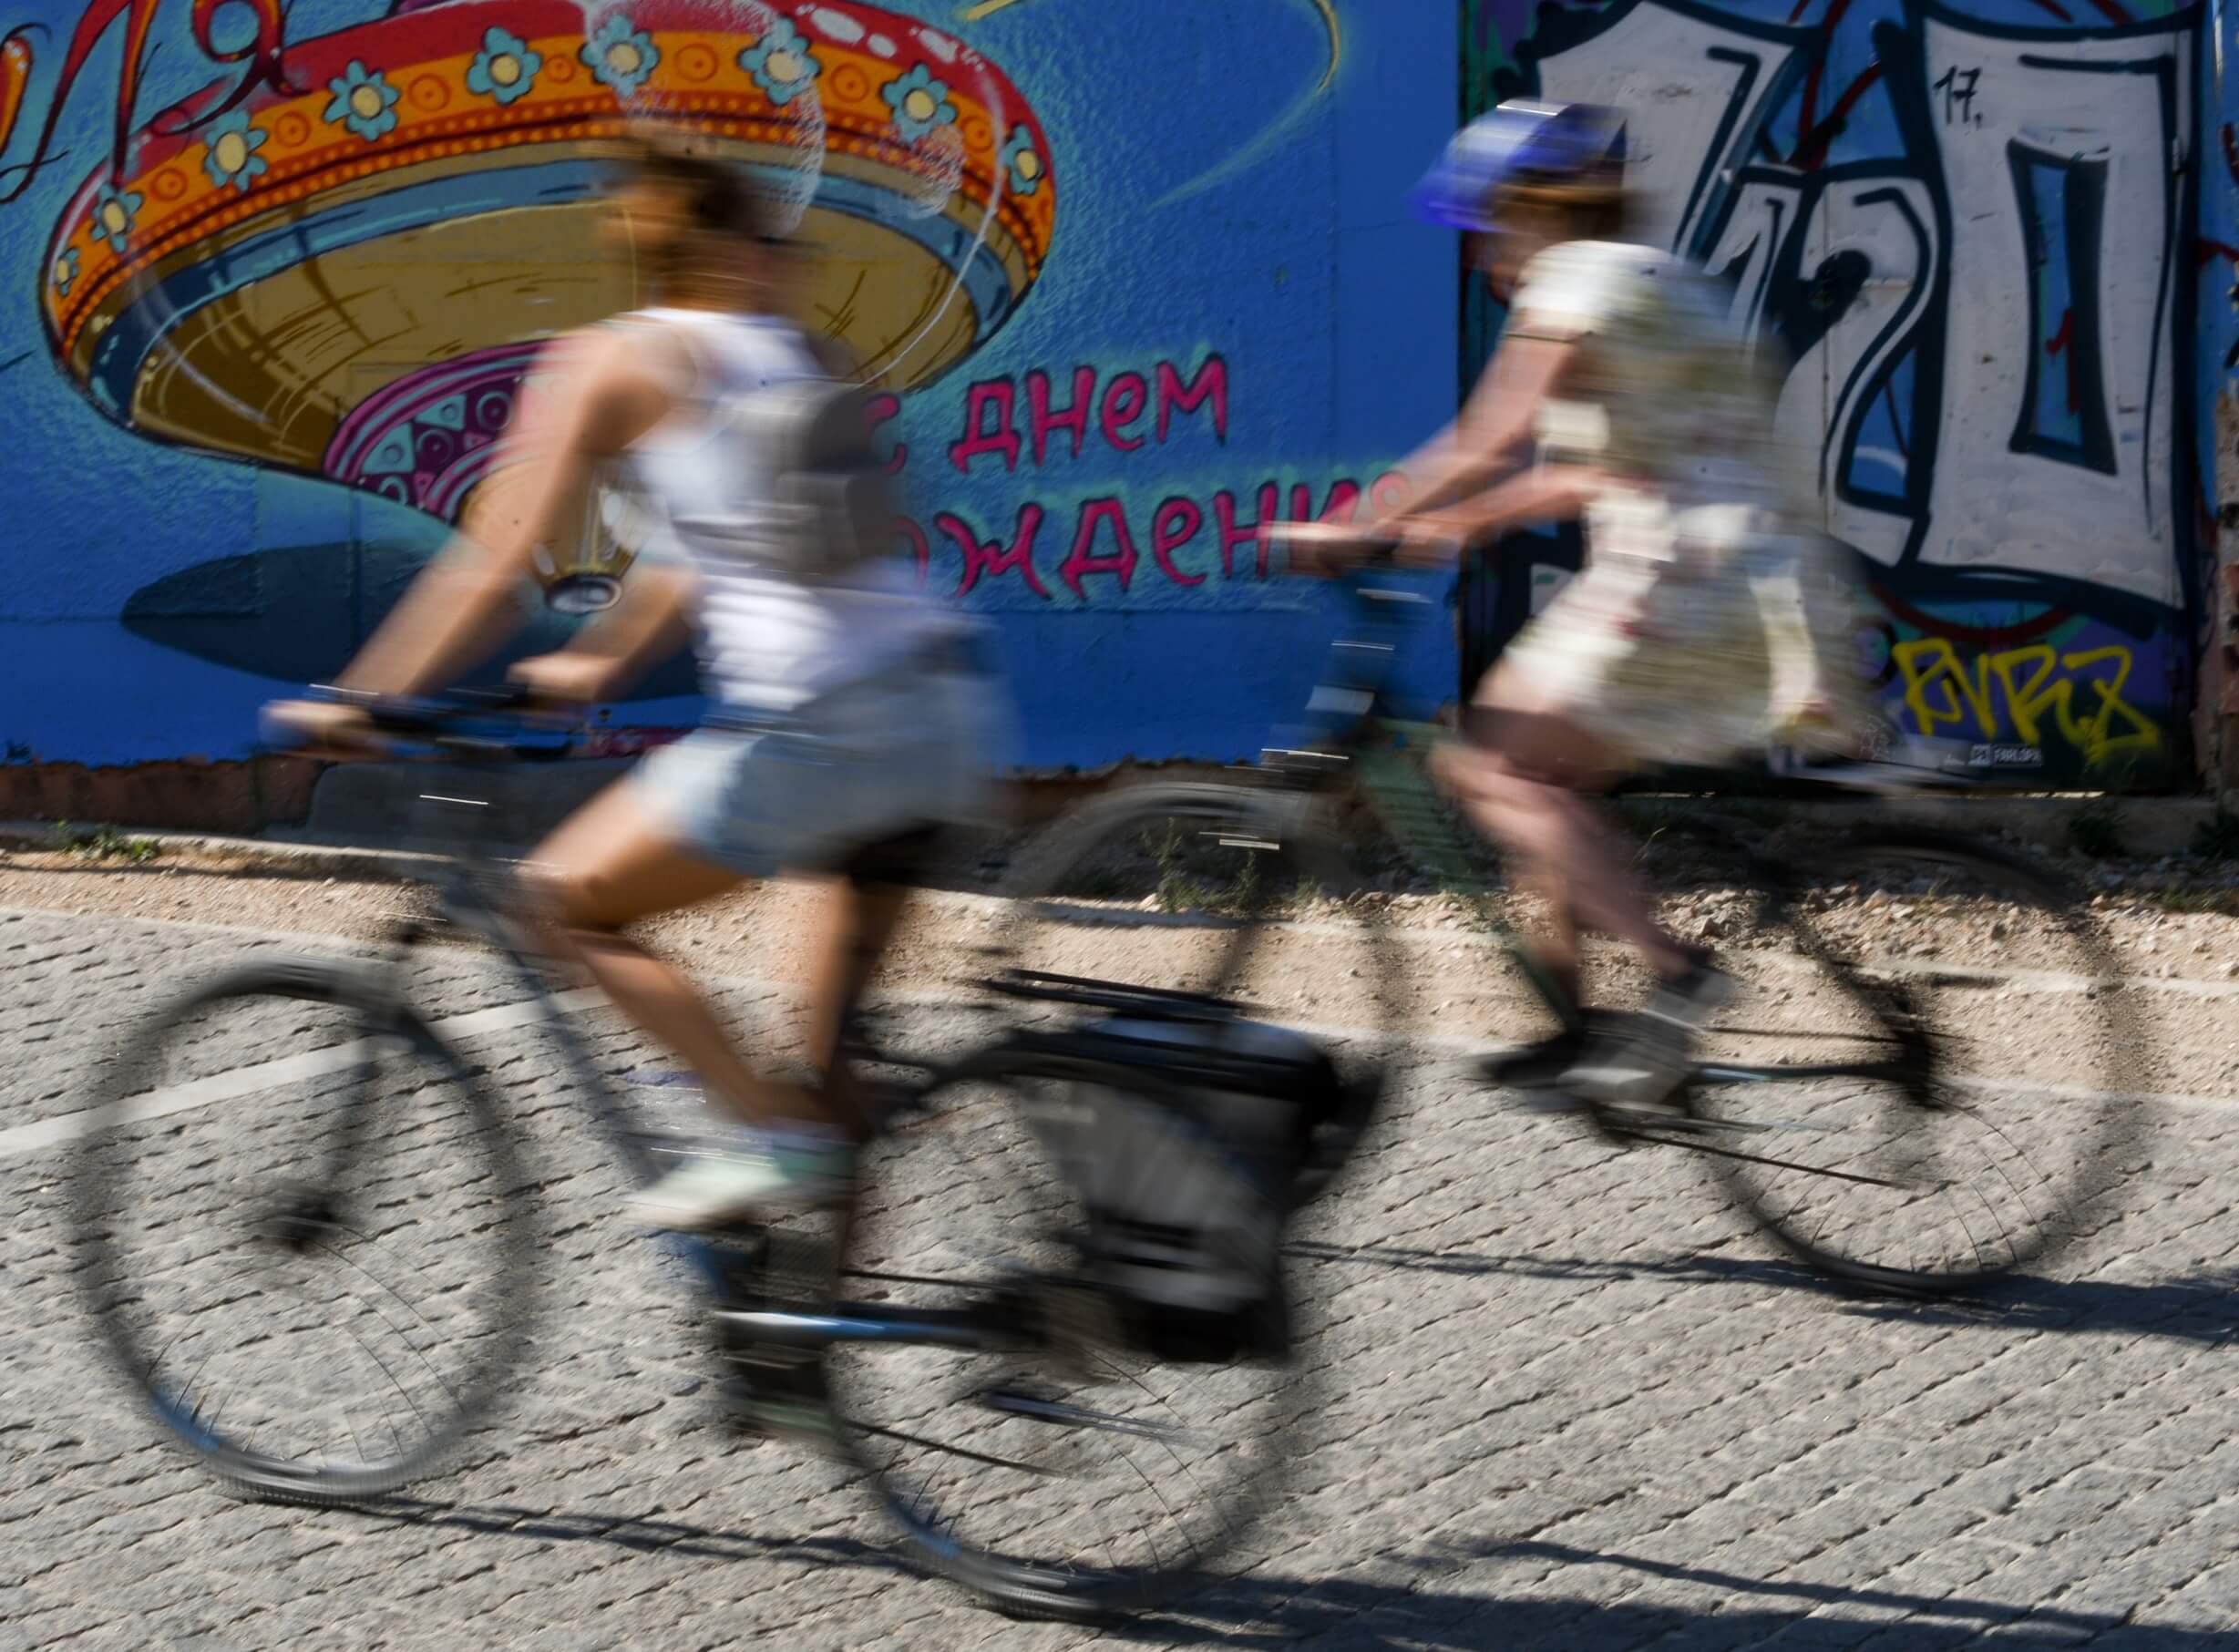 Στις 20 πιο φιλικές πόλεις του κόσμου για ποδήλατο η Λιουμπλιάνα